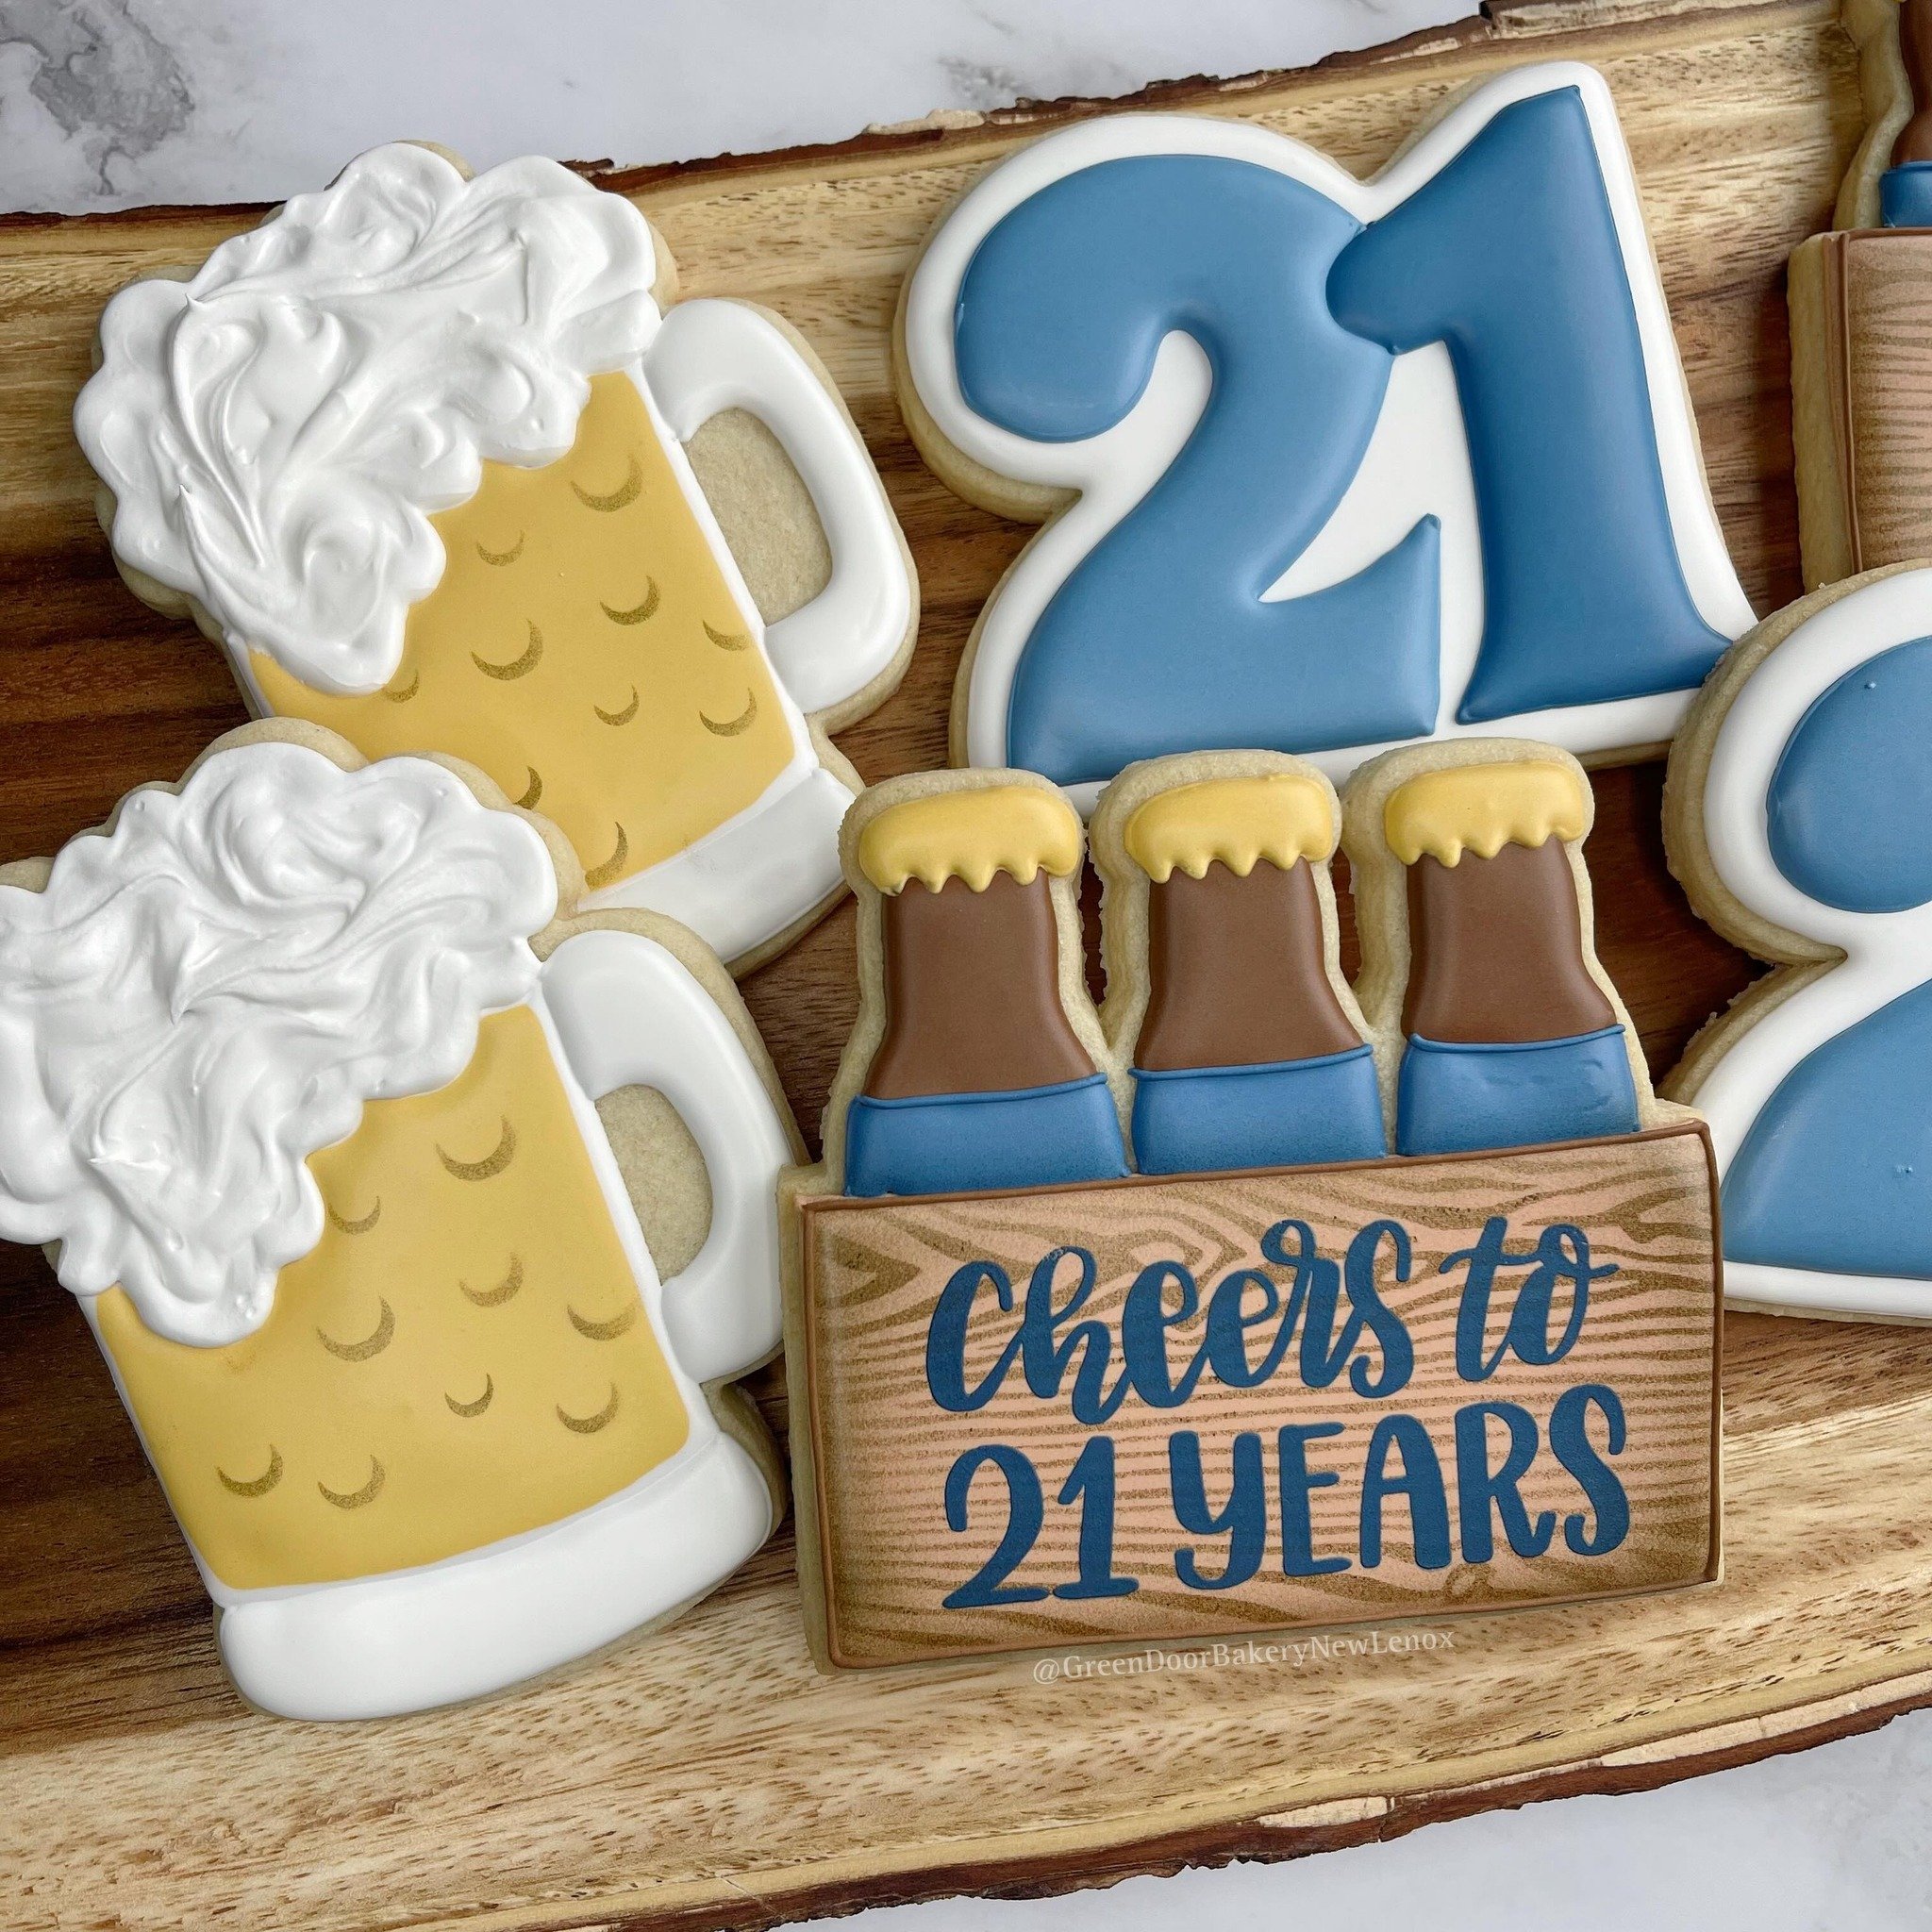 Happy 21st! 🍻 🎉 

#Greendoorbakerynewlenox #newlenox #newlenoxil #newlenoxillinois #illinois #instacookies #customcookies #sugarcookies #homebaker #cookies #yum #edibleart #21stbirthdaycookies #beercookies #6packcookies #beercratecookies #birthdayc